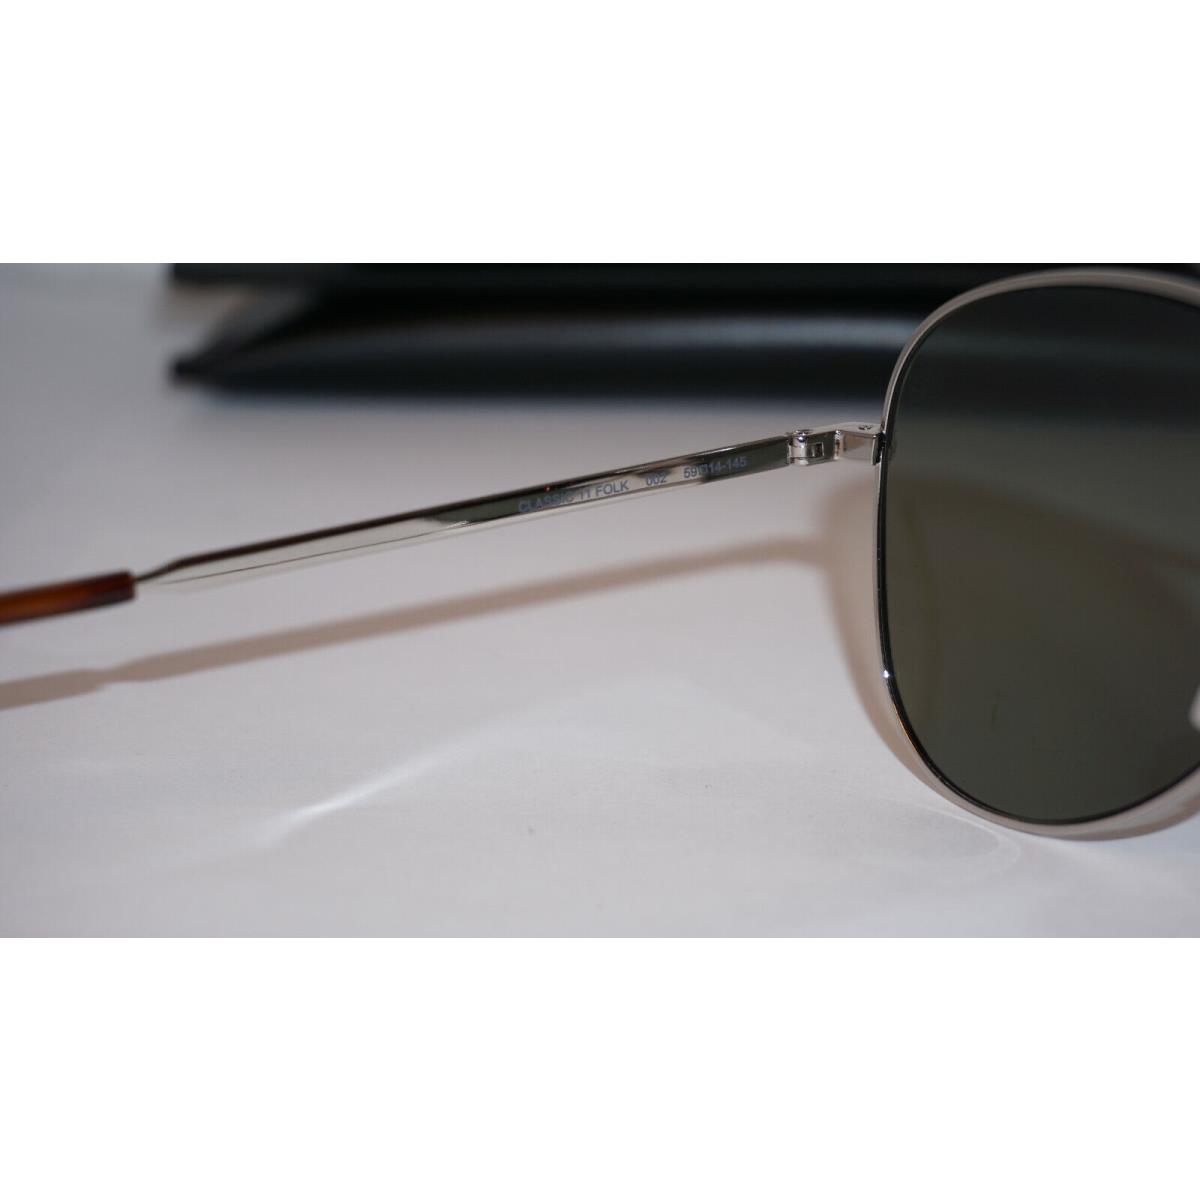 Yves Saint Laurent sunglasses  - Frame: Silver, Lens: Green 7